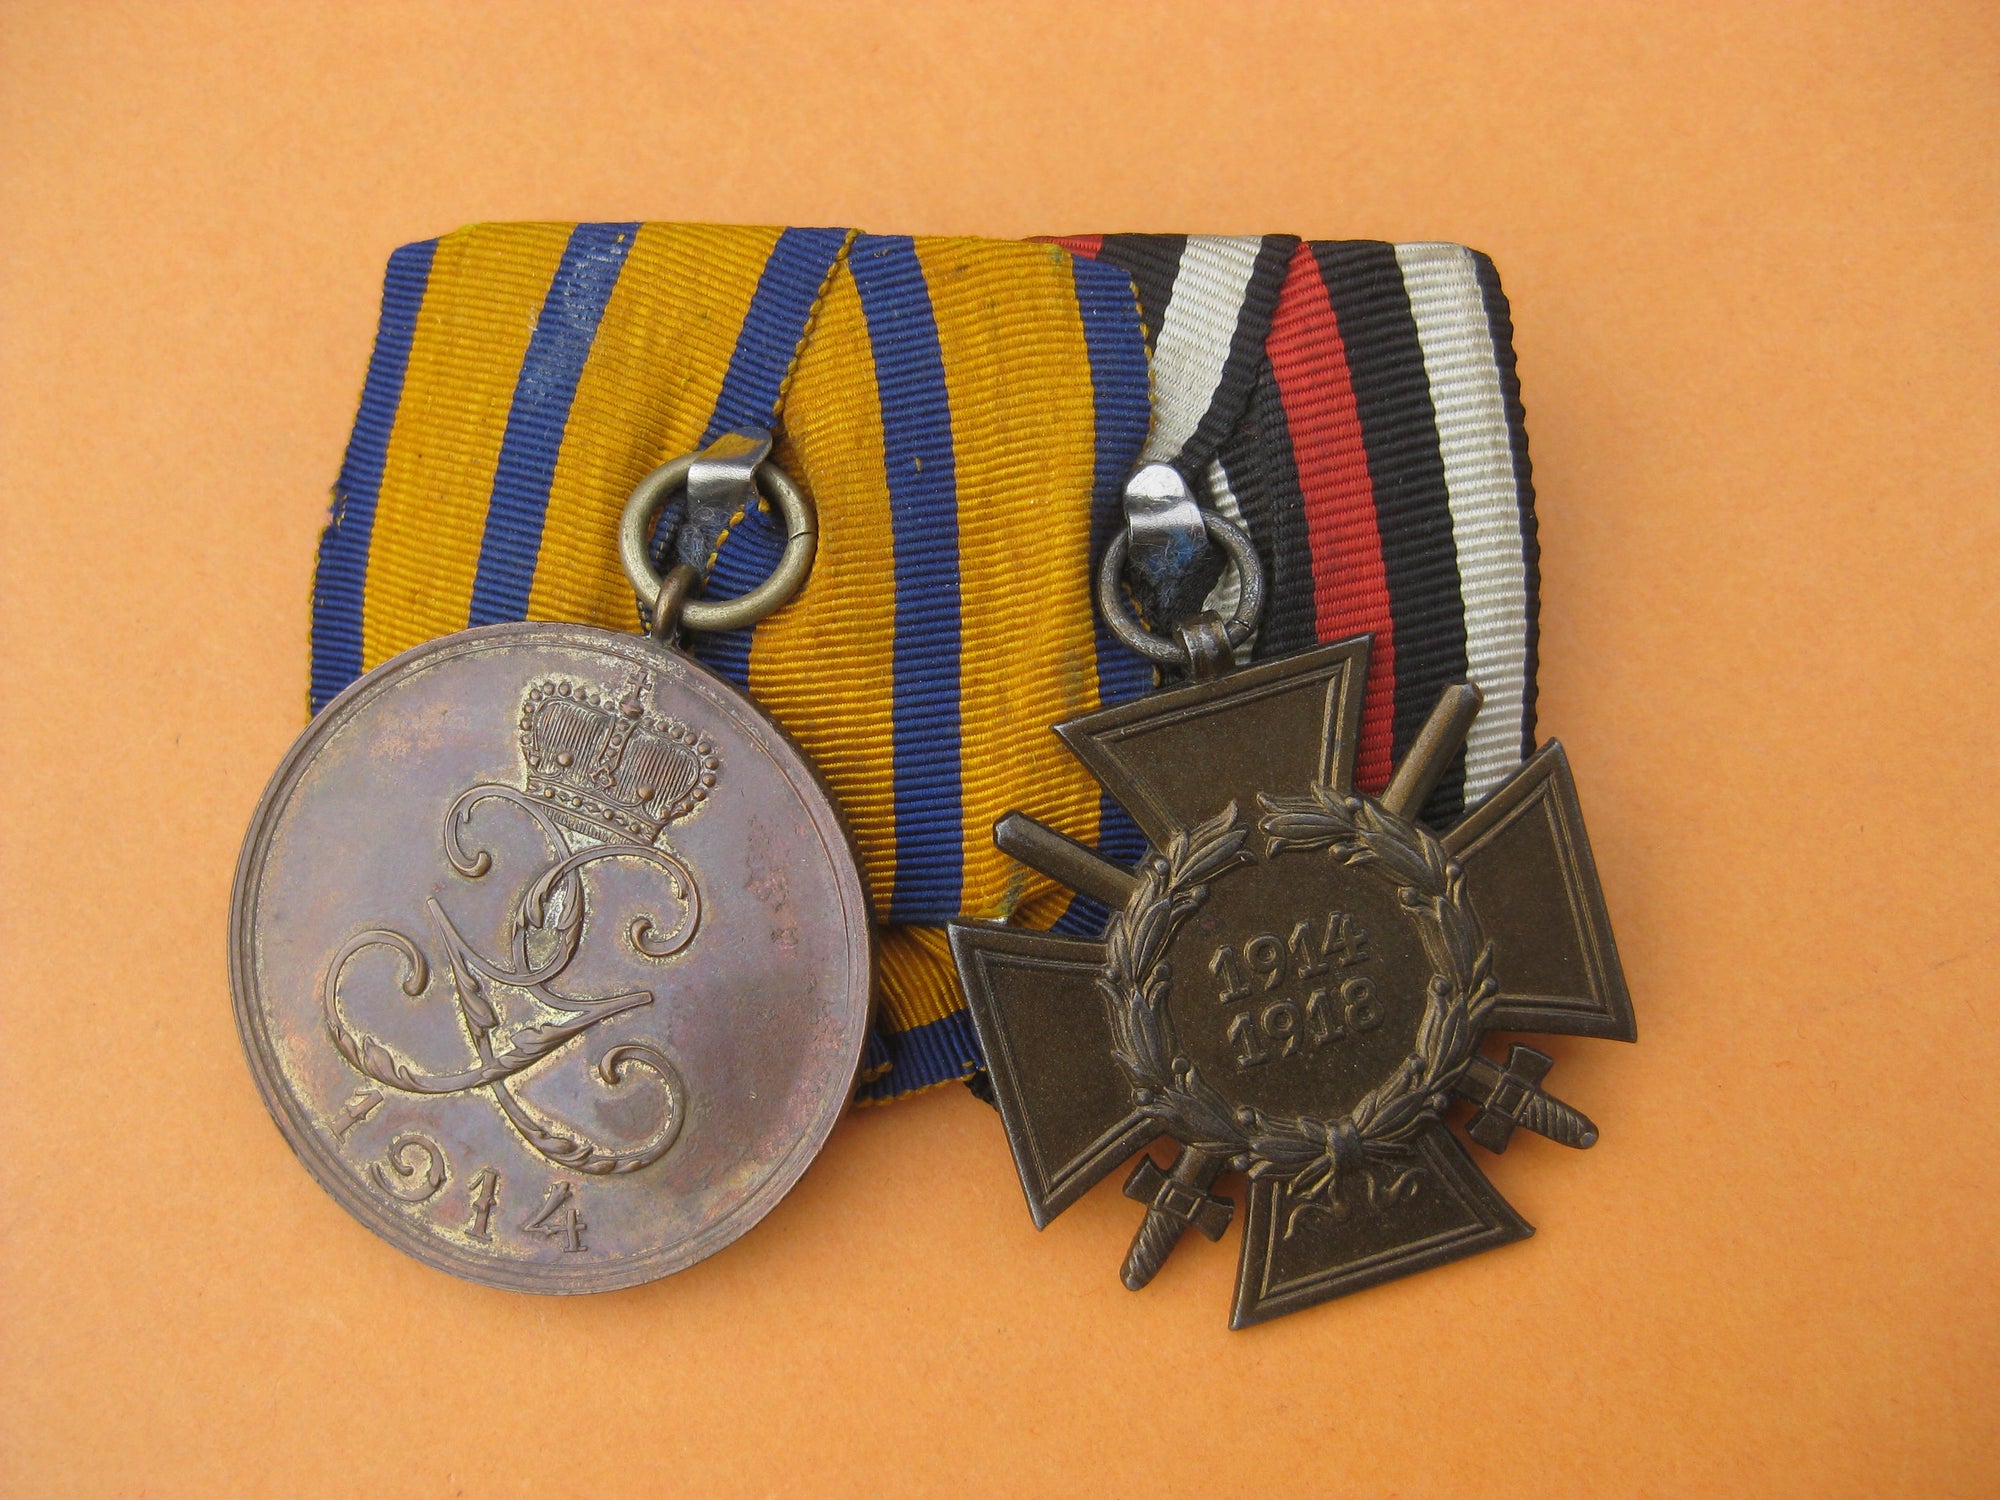 2er Ordensspange silberne Medaille Verdienst im Kriege Schwarzburg-Sondershausen späte Verleihung